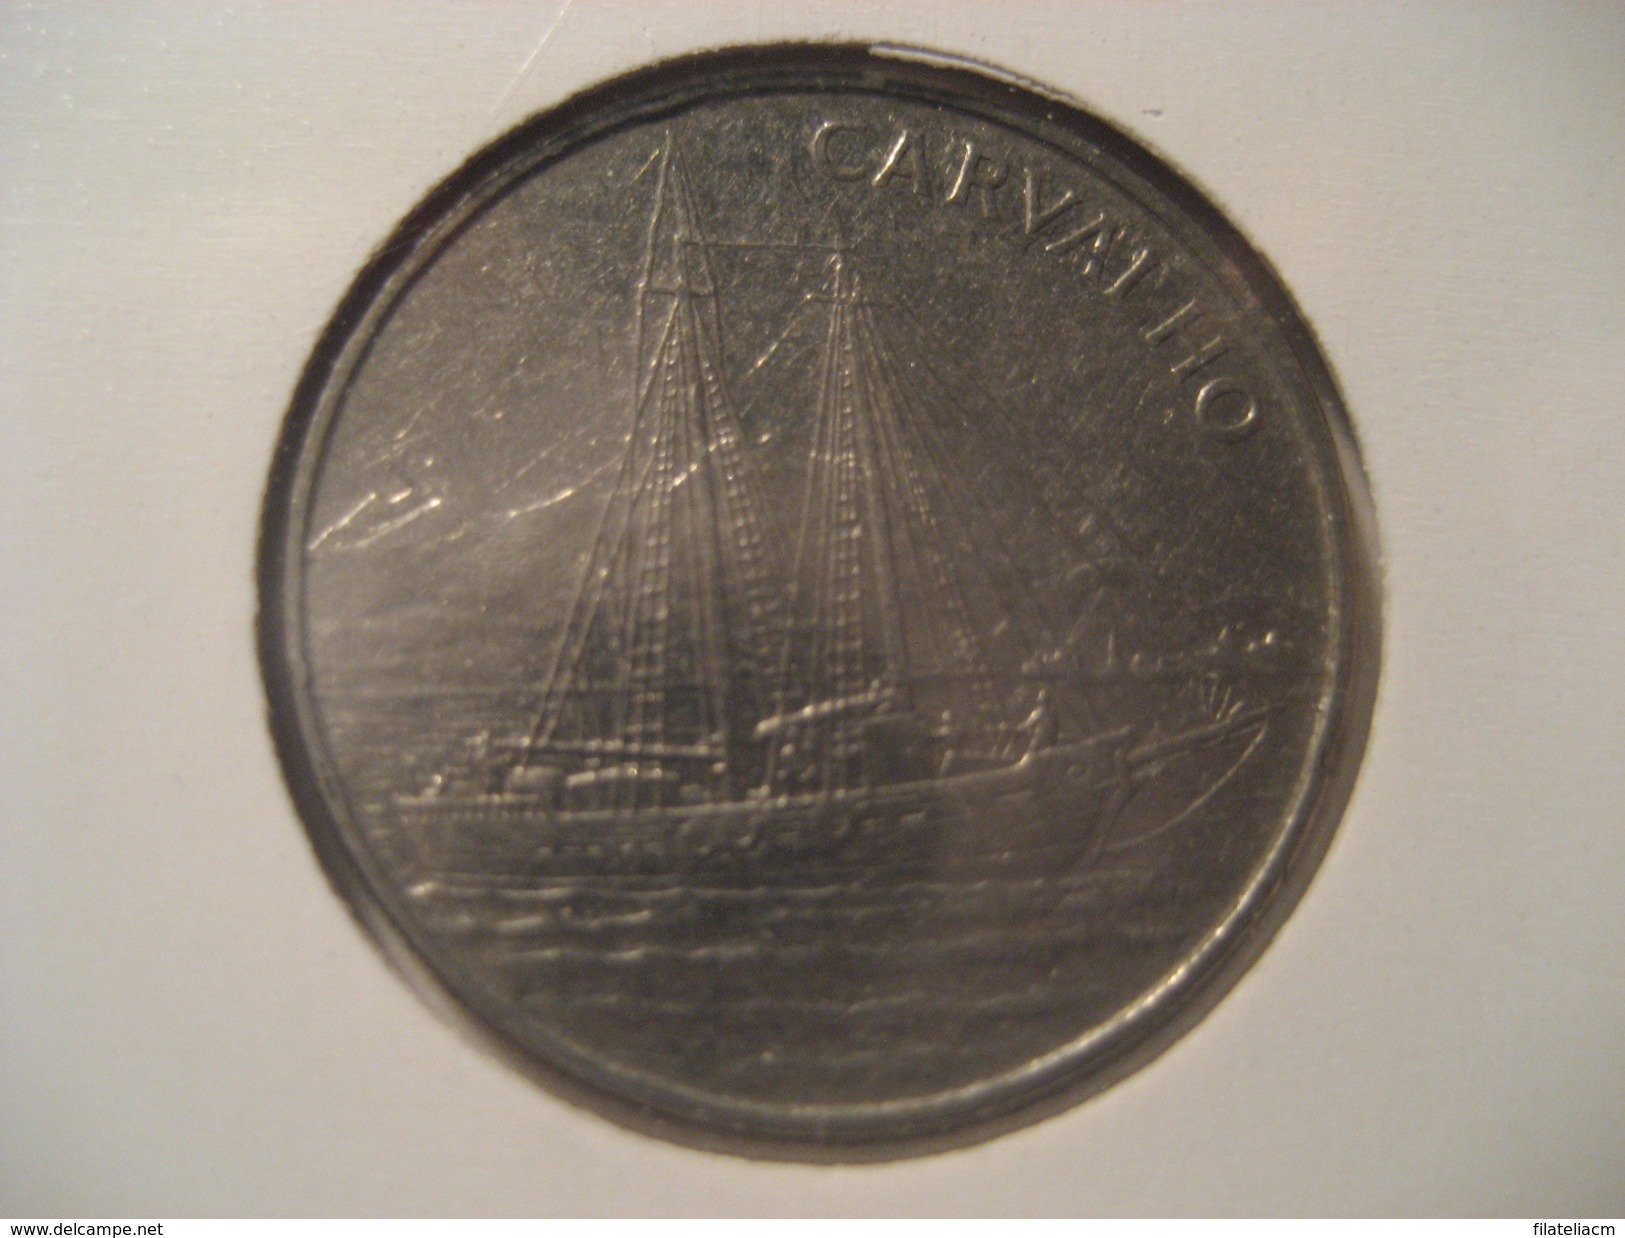 10 Escudos 1994 CAPE VERDE Coin Cap-Vert Cabo Verde - Cape Verde